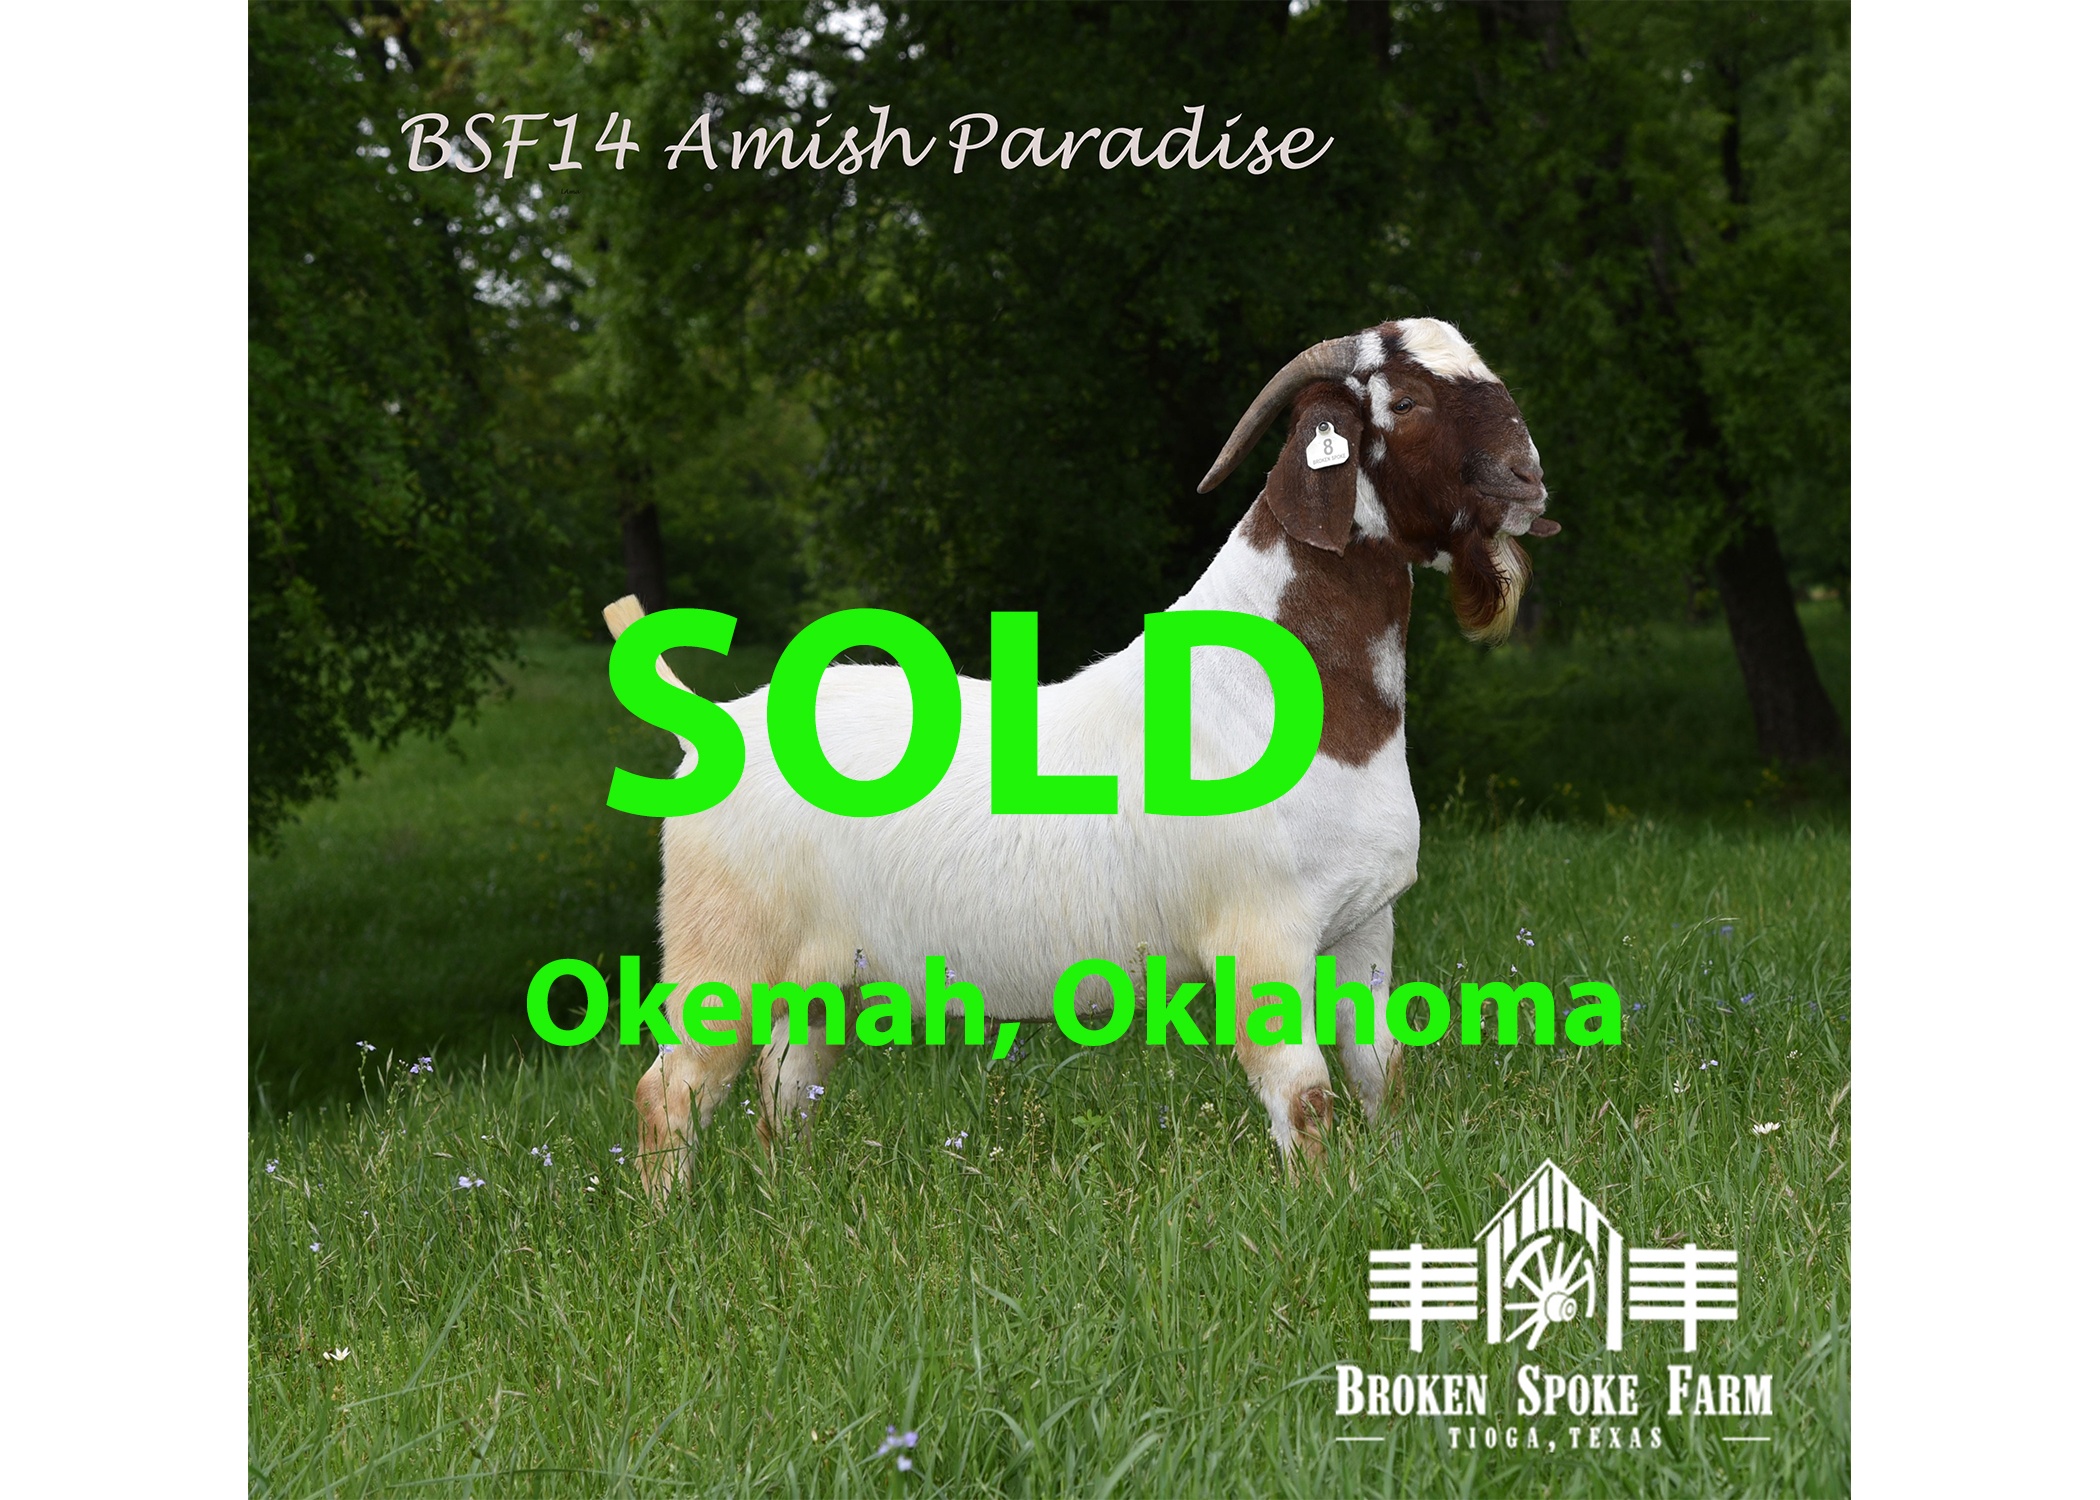 Venable farms Show Goats for Sale